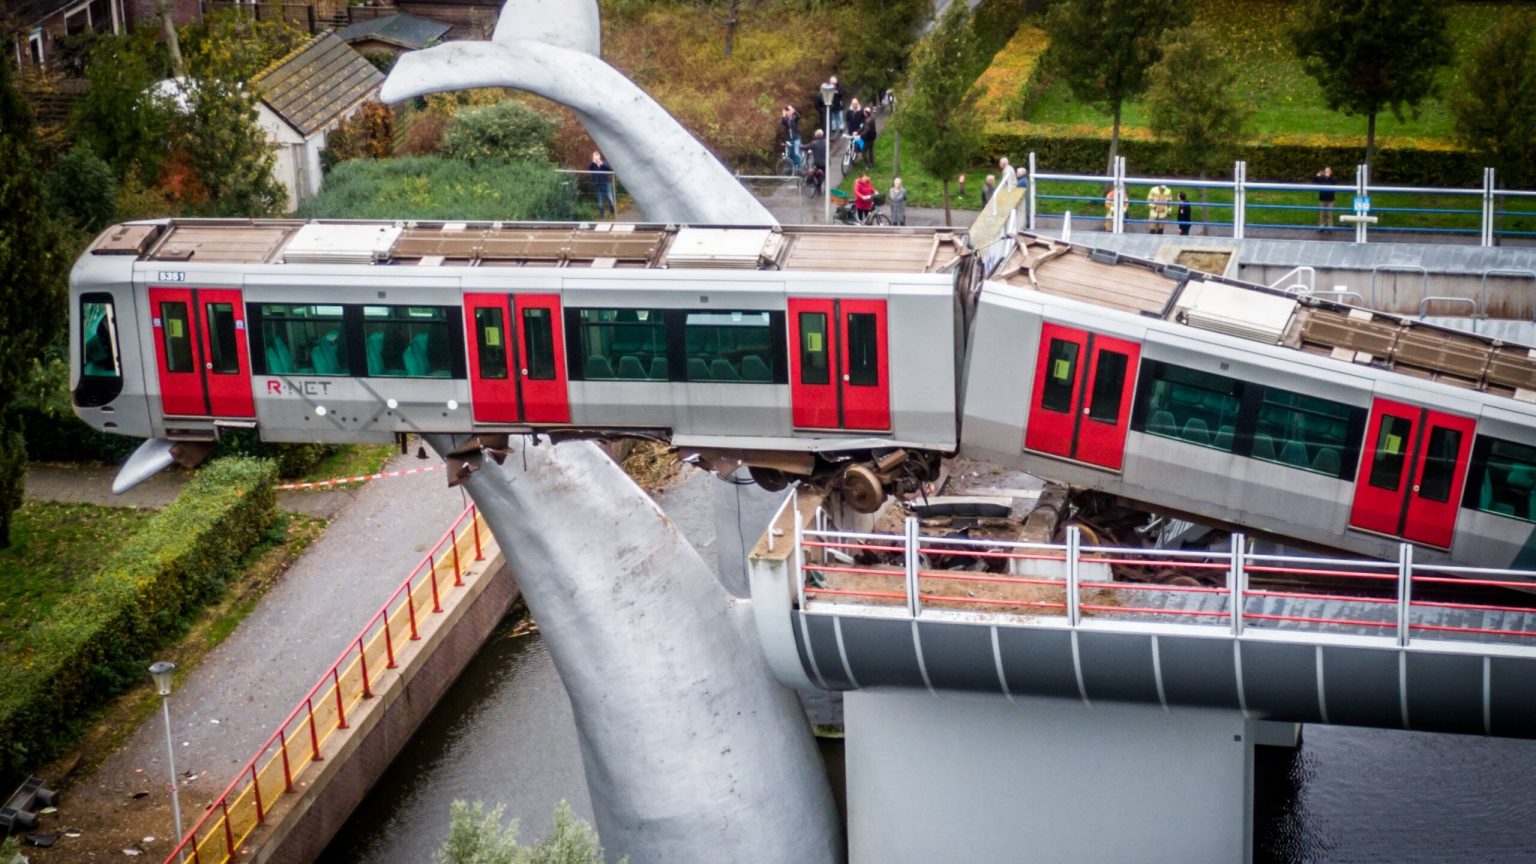 Escultura de baleia impediu queda de carruagem de metro com passageiros no interior na Holanda